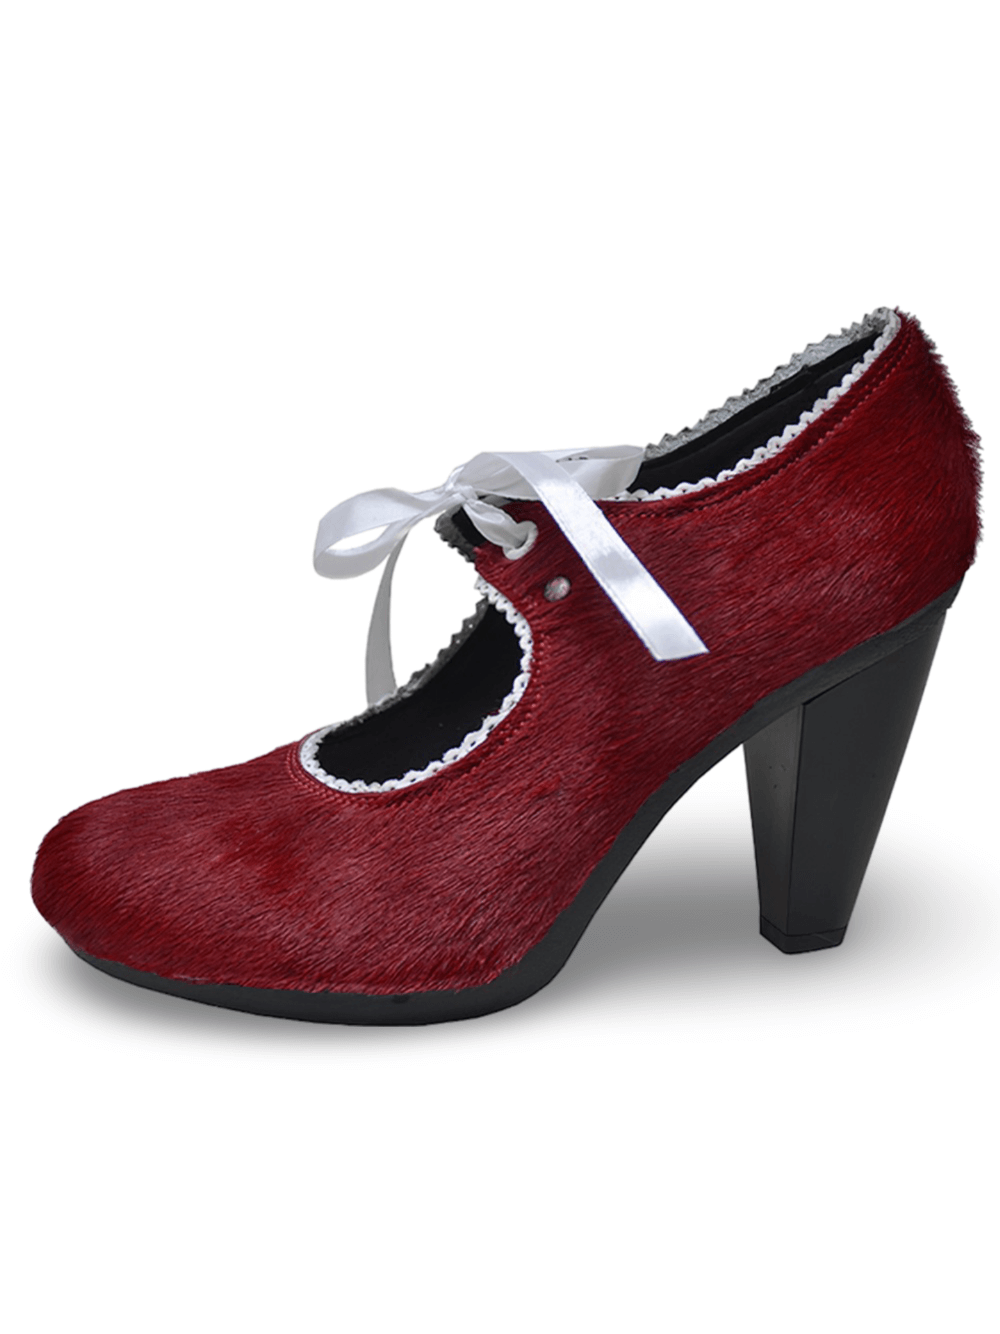 Zapatos de tacón alto de piel y cuero rojo vino con cordones blancos